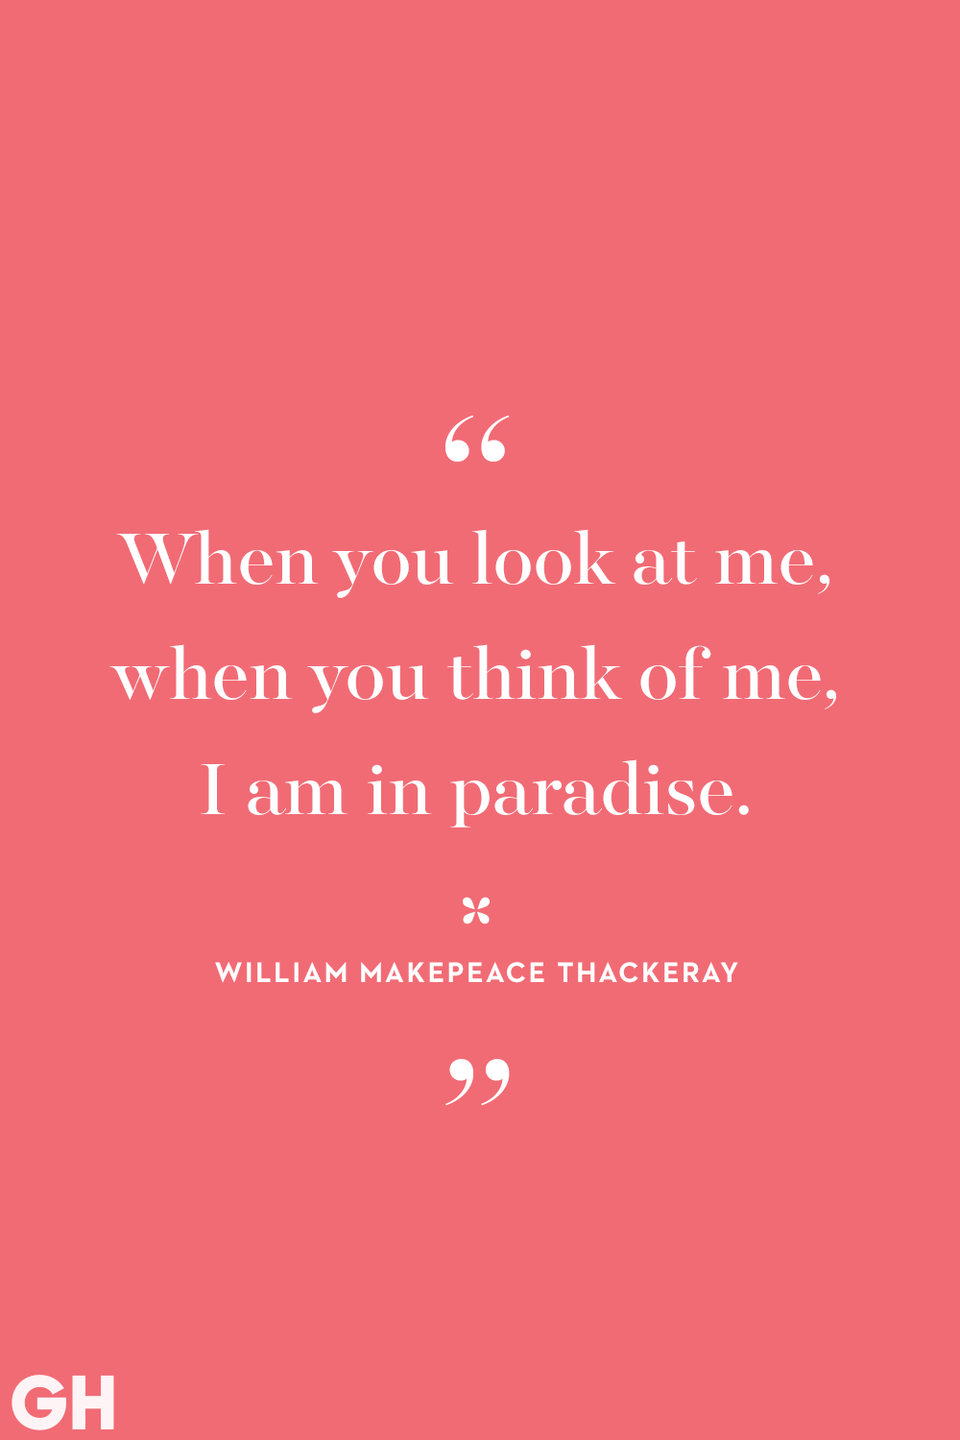 41) William Makepeace Thackeray